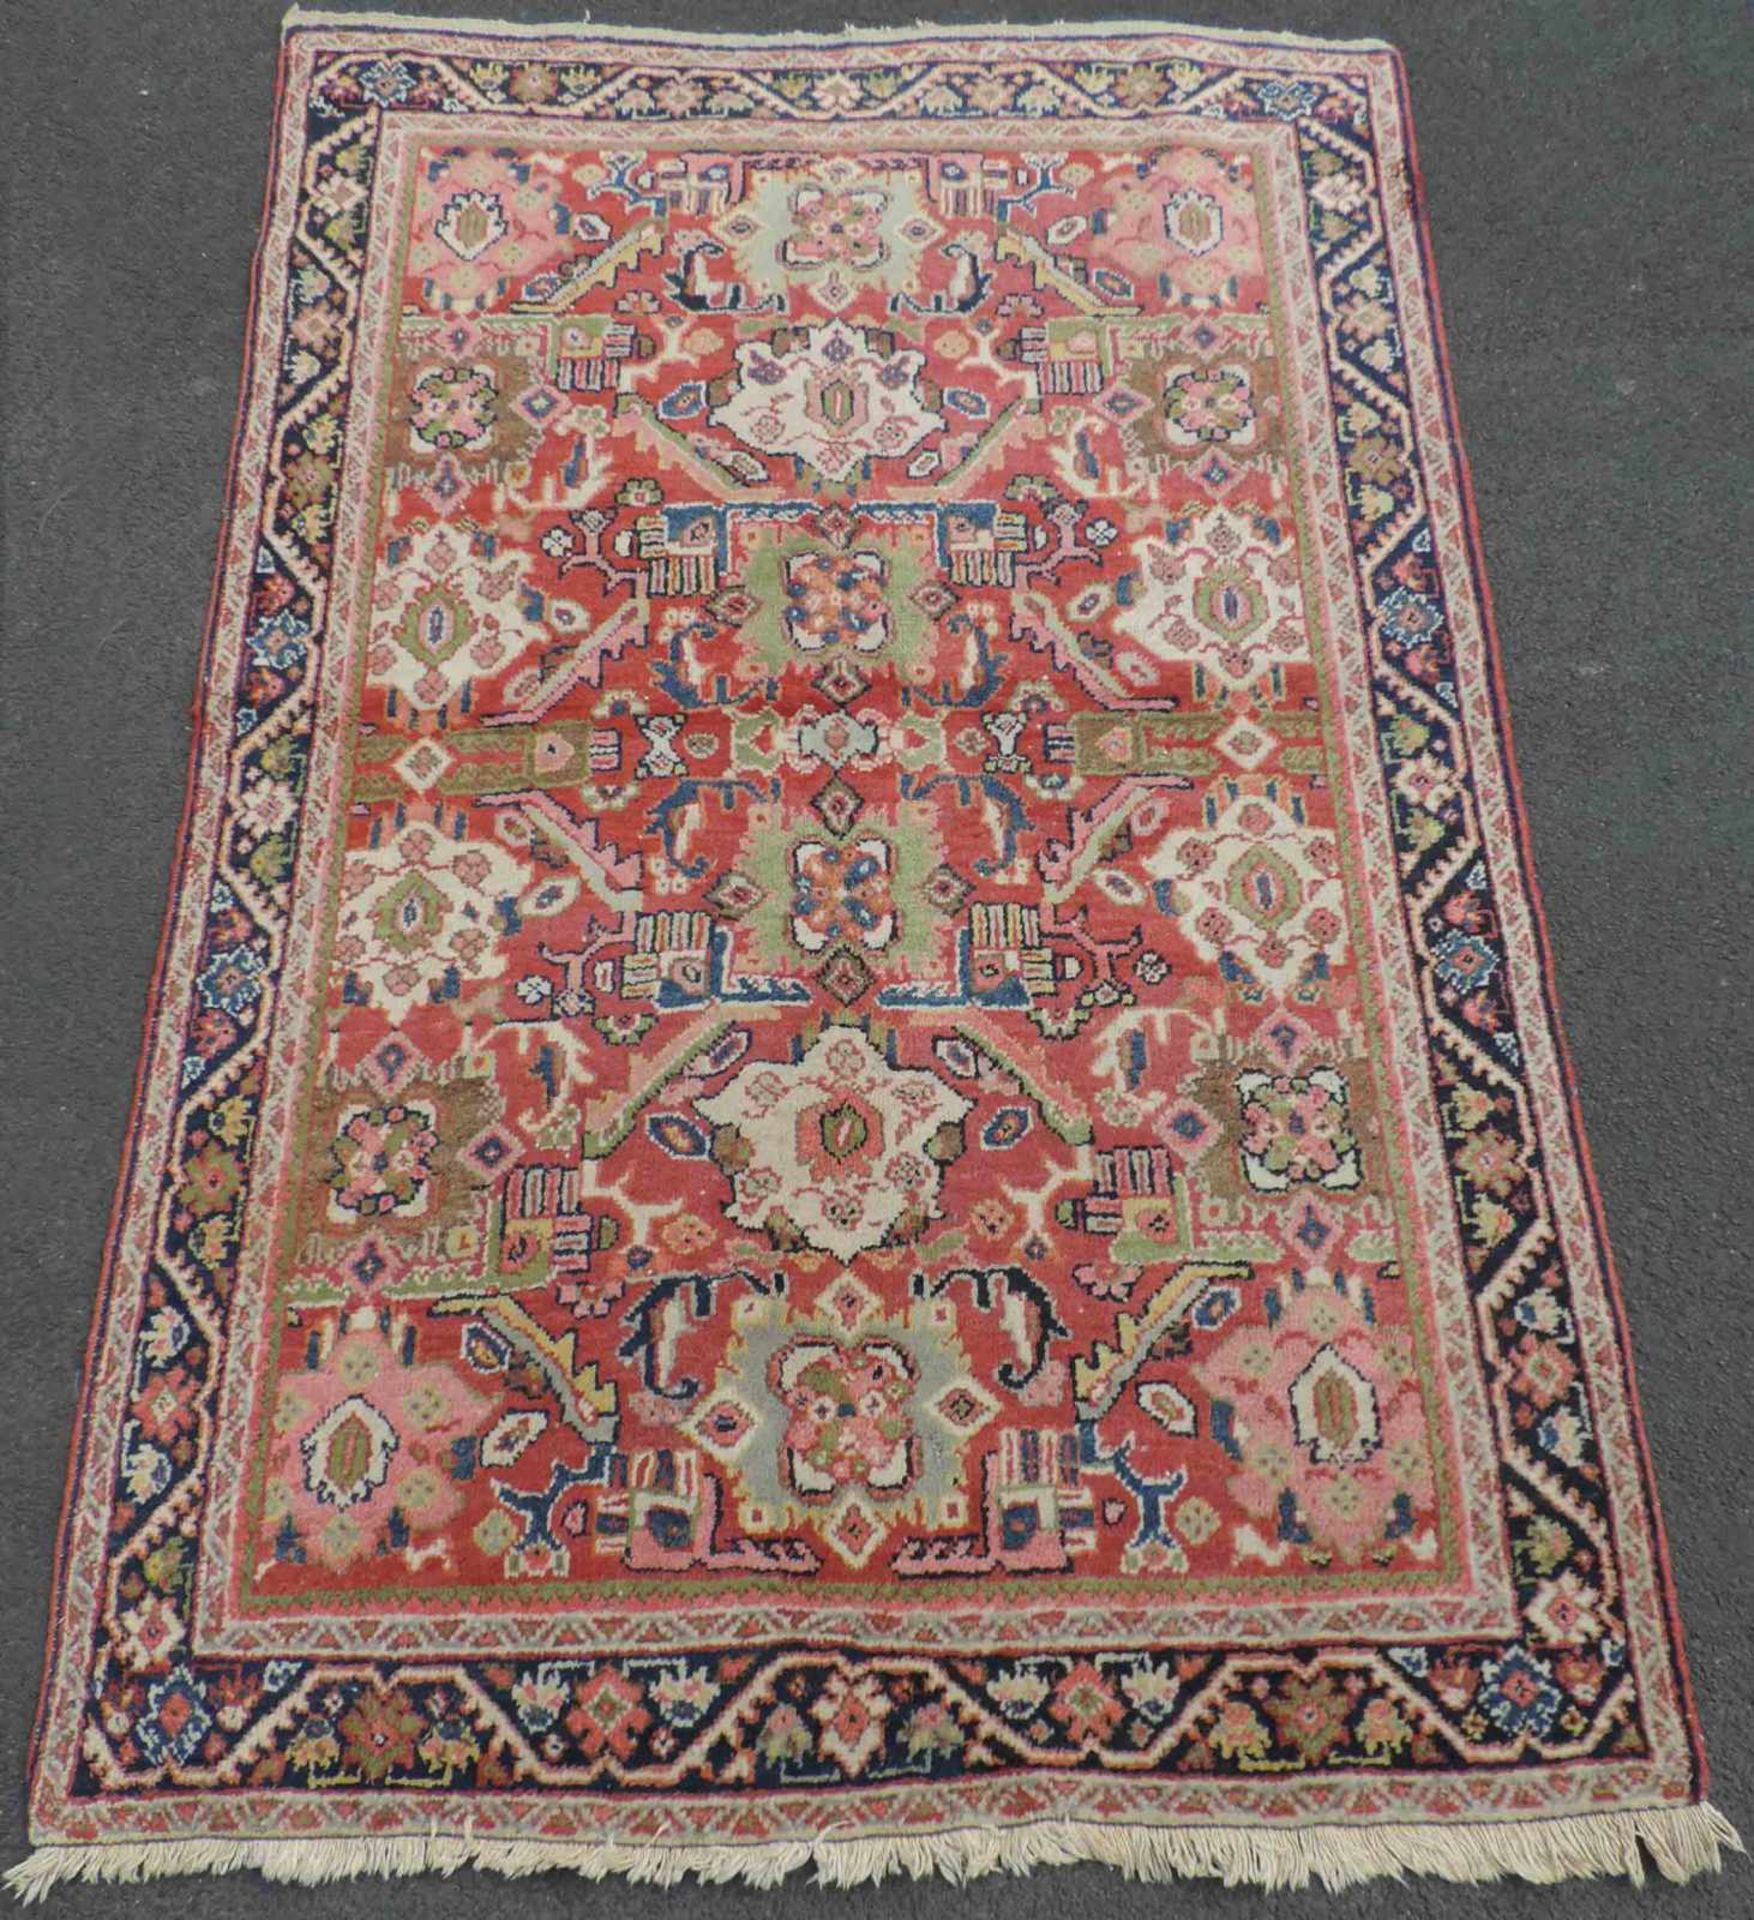 Mahal Teppich. Iran, alt, um 1930. 199 cm x 136 cm. Handgeknüpft. Wolle auf Baumwolle. Mahal rug.